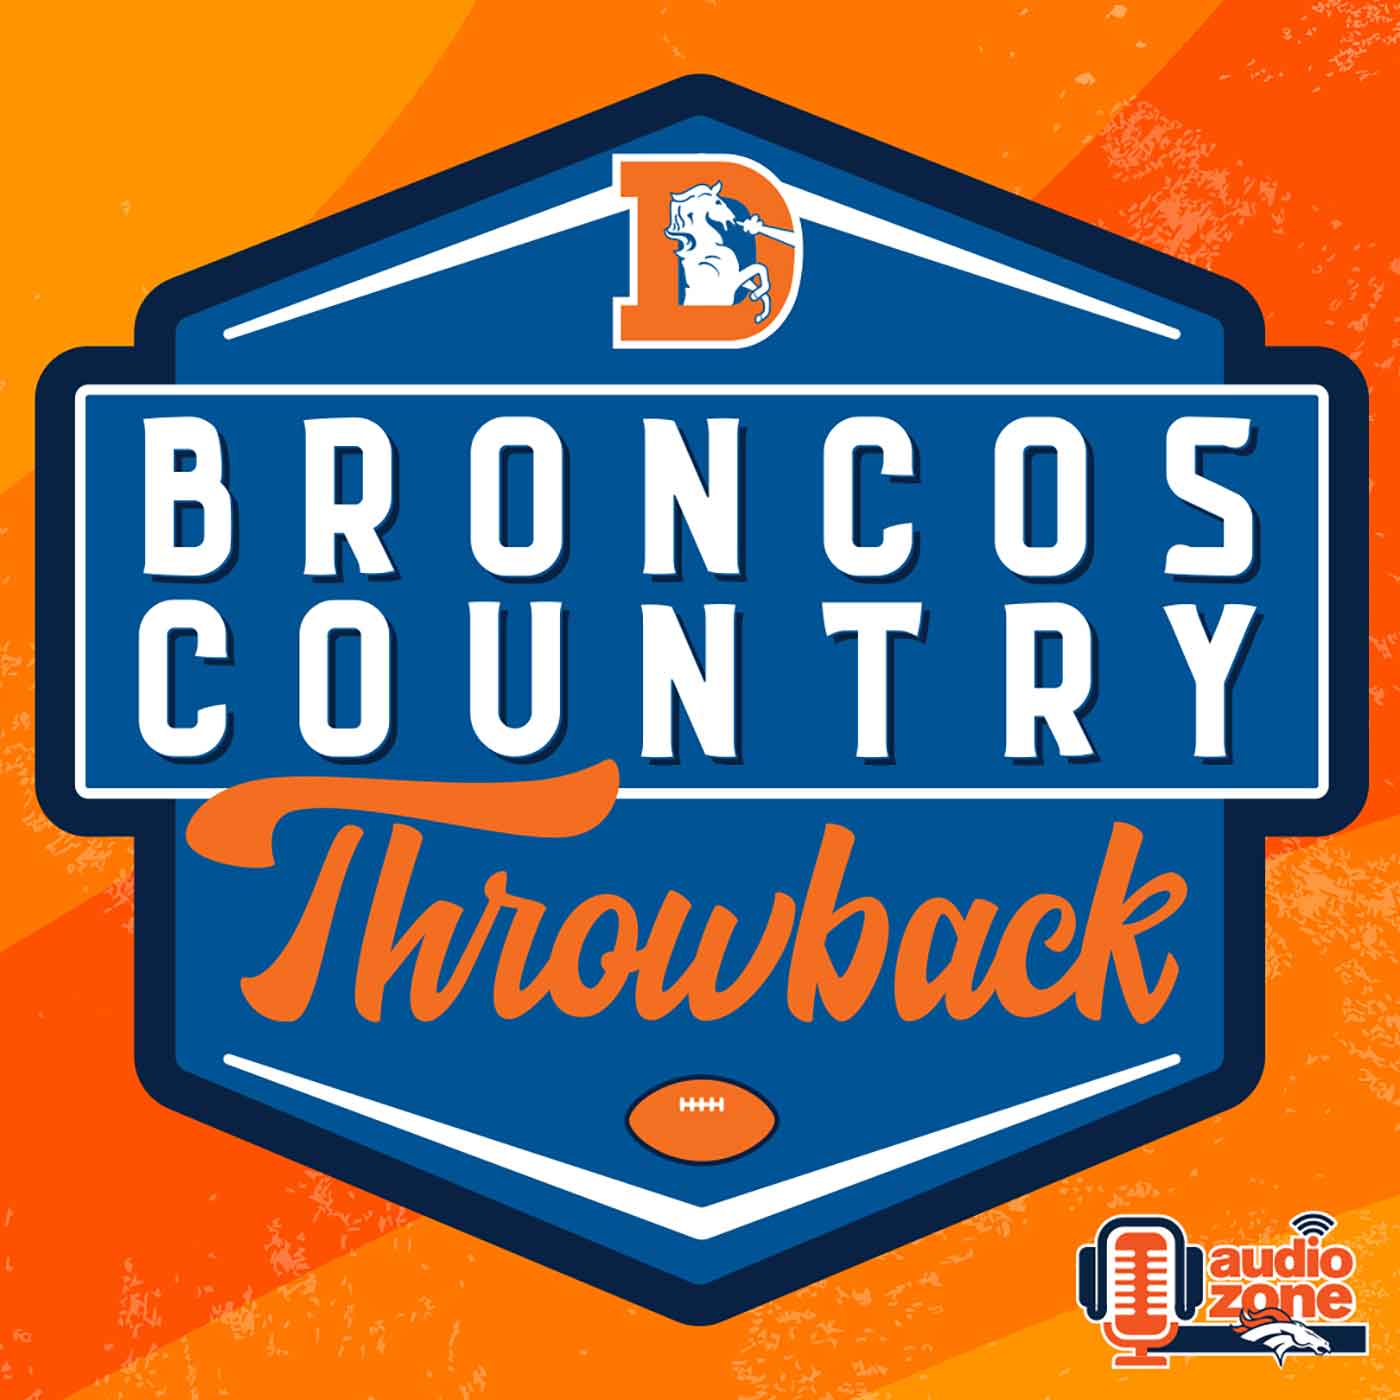 Broncos Country Throwback - Official Denver Broncos Podcast